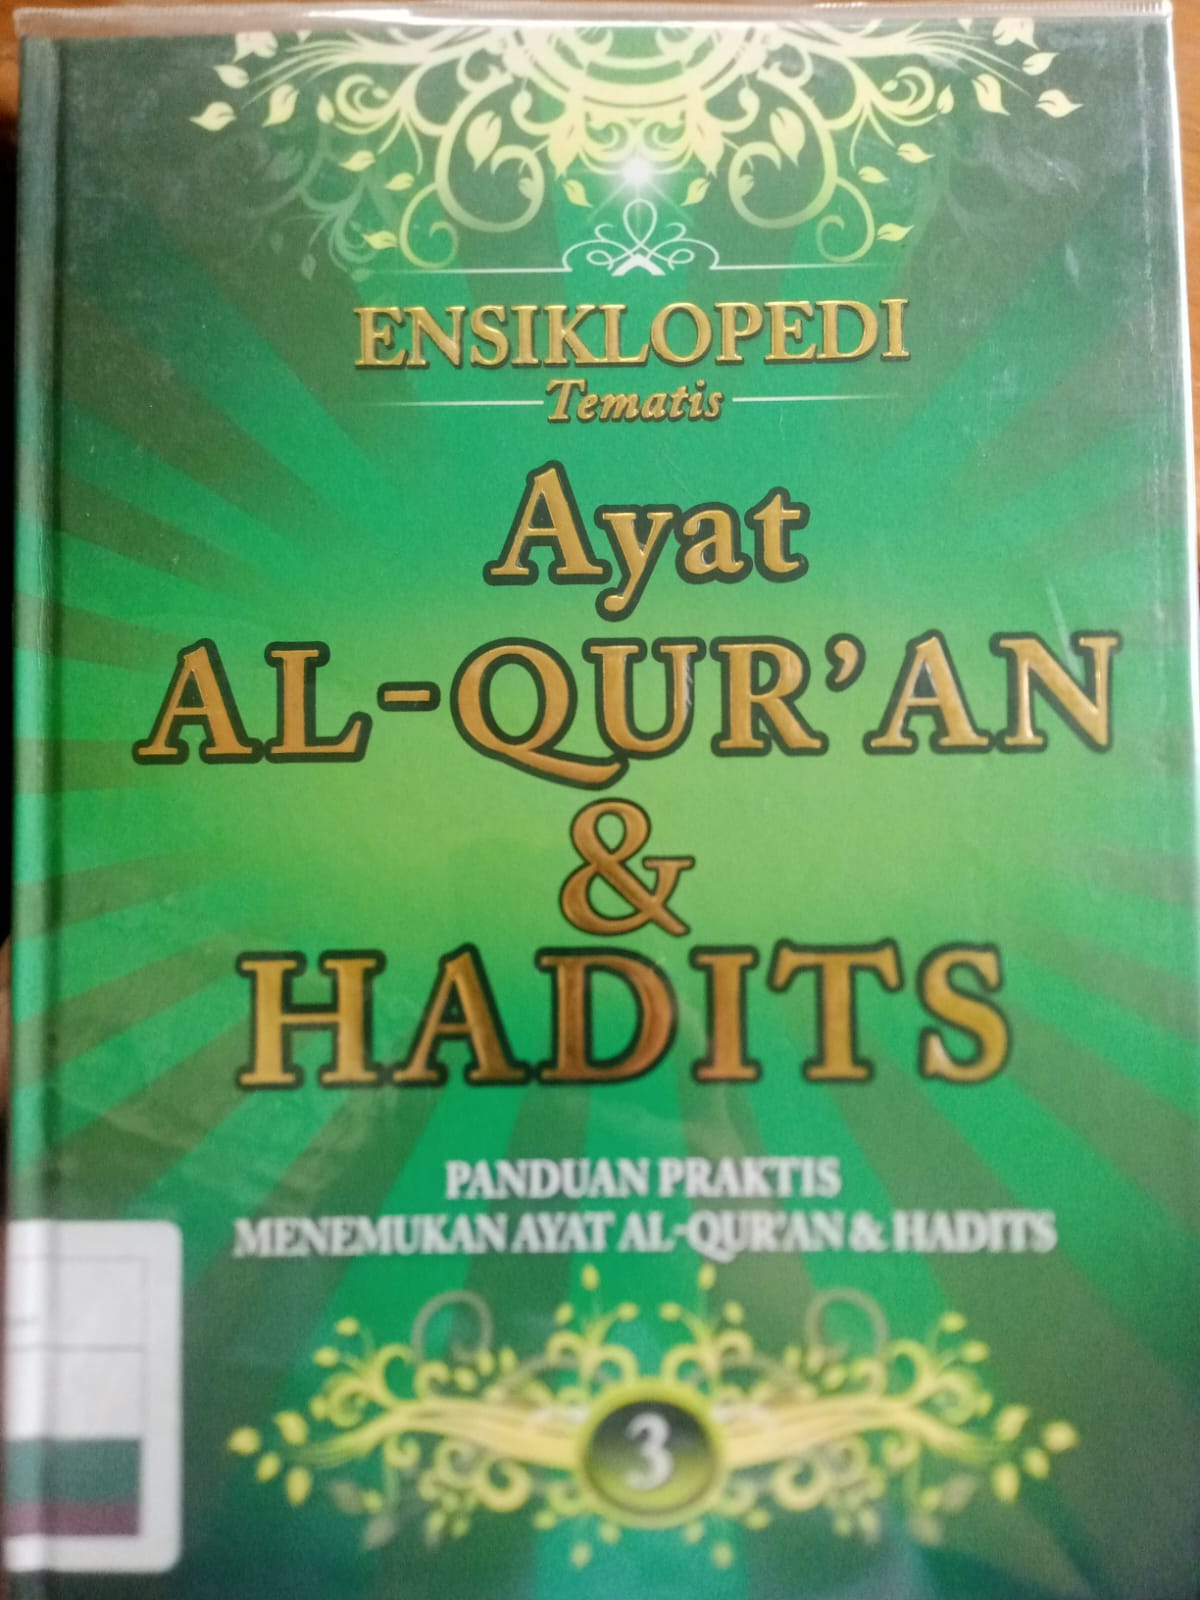 Ensiklopedi tematis ayat al-qur'an dan hadits  jilid 3 :  Panduan praktis menemukan ayat al-qur'an & hadits